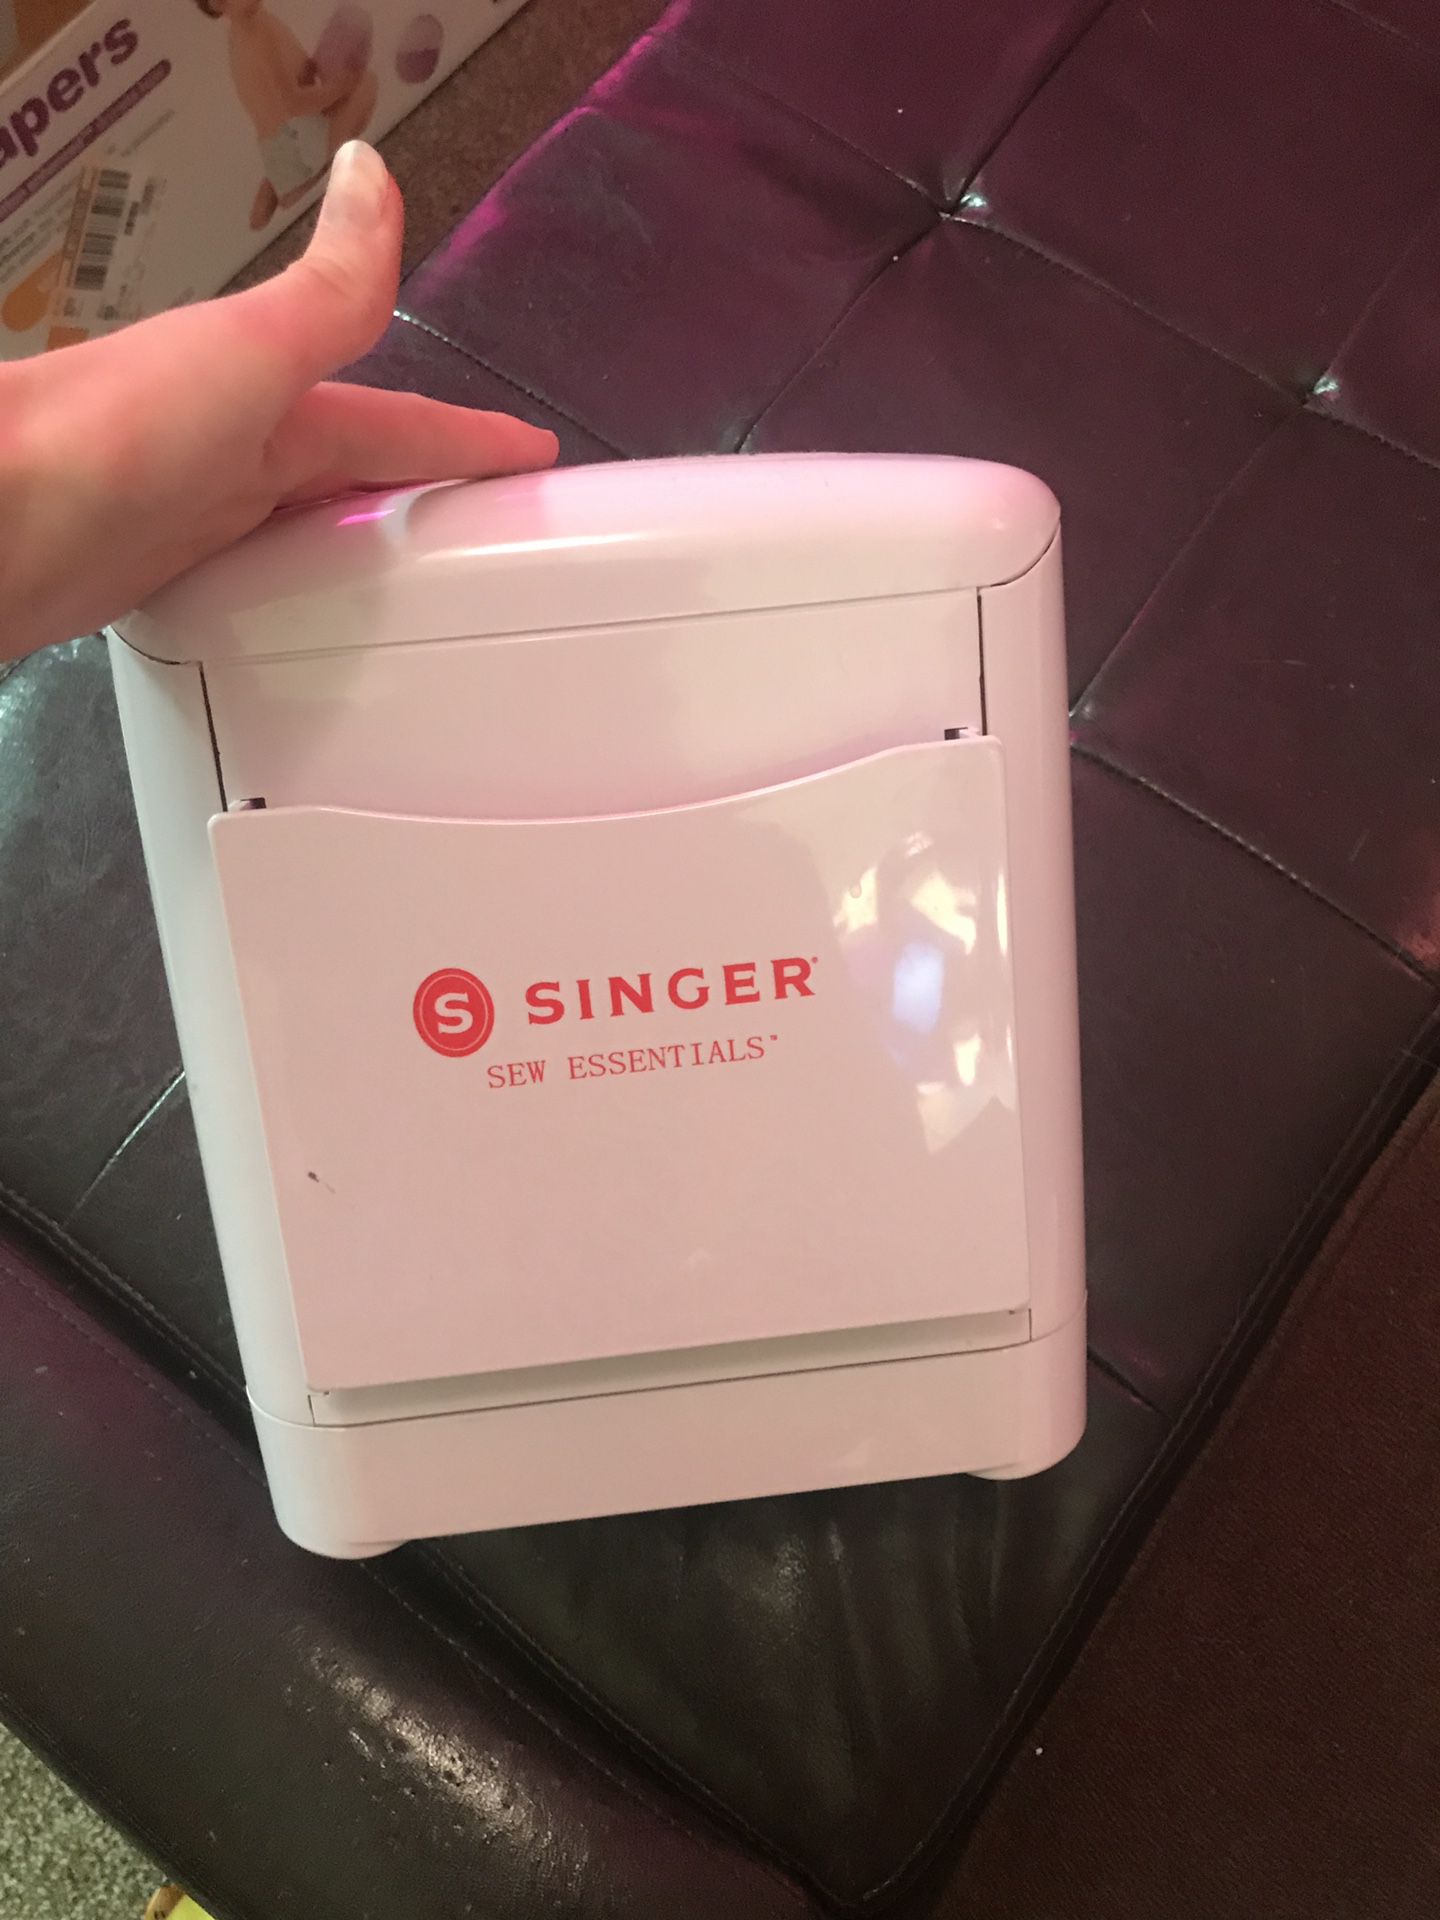 Singer sewing box